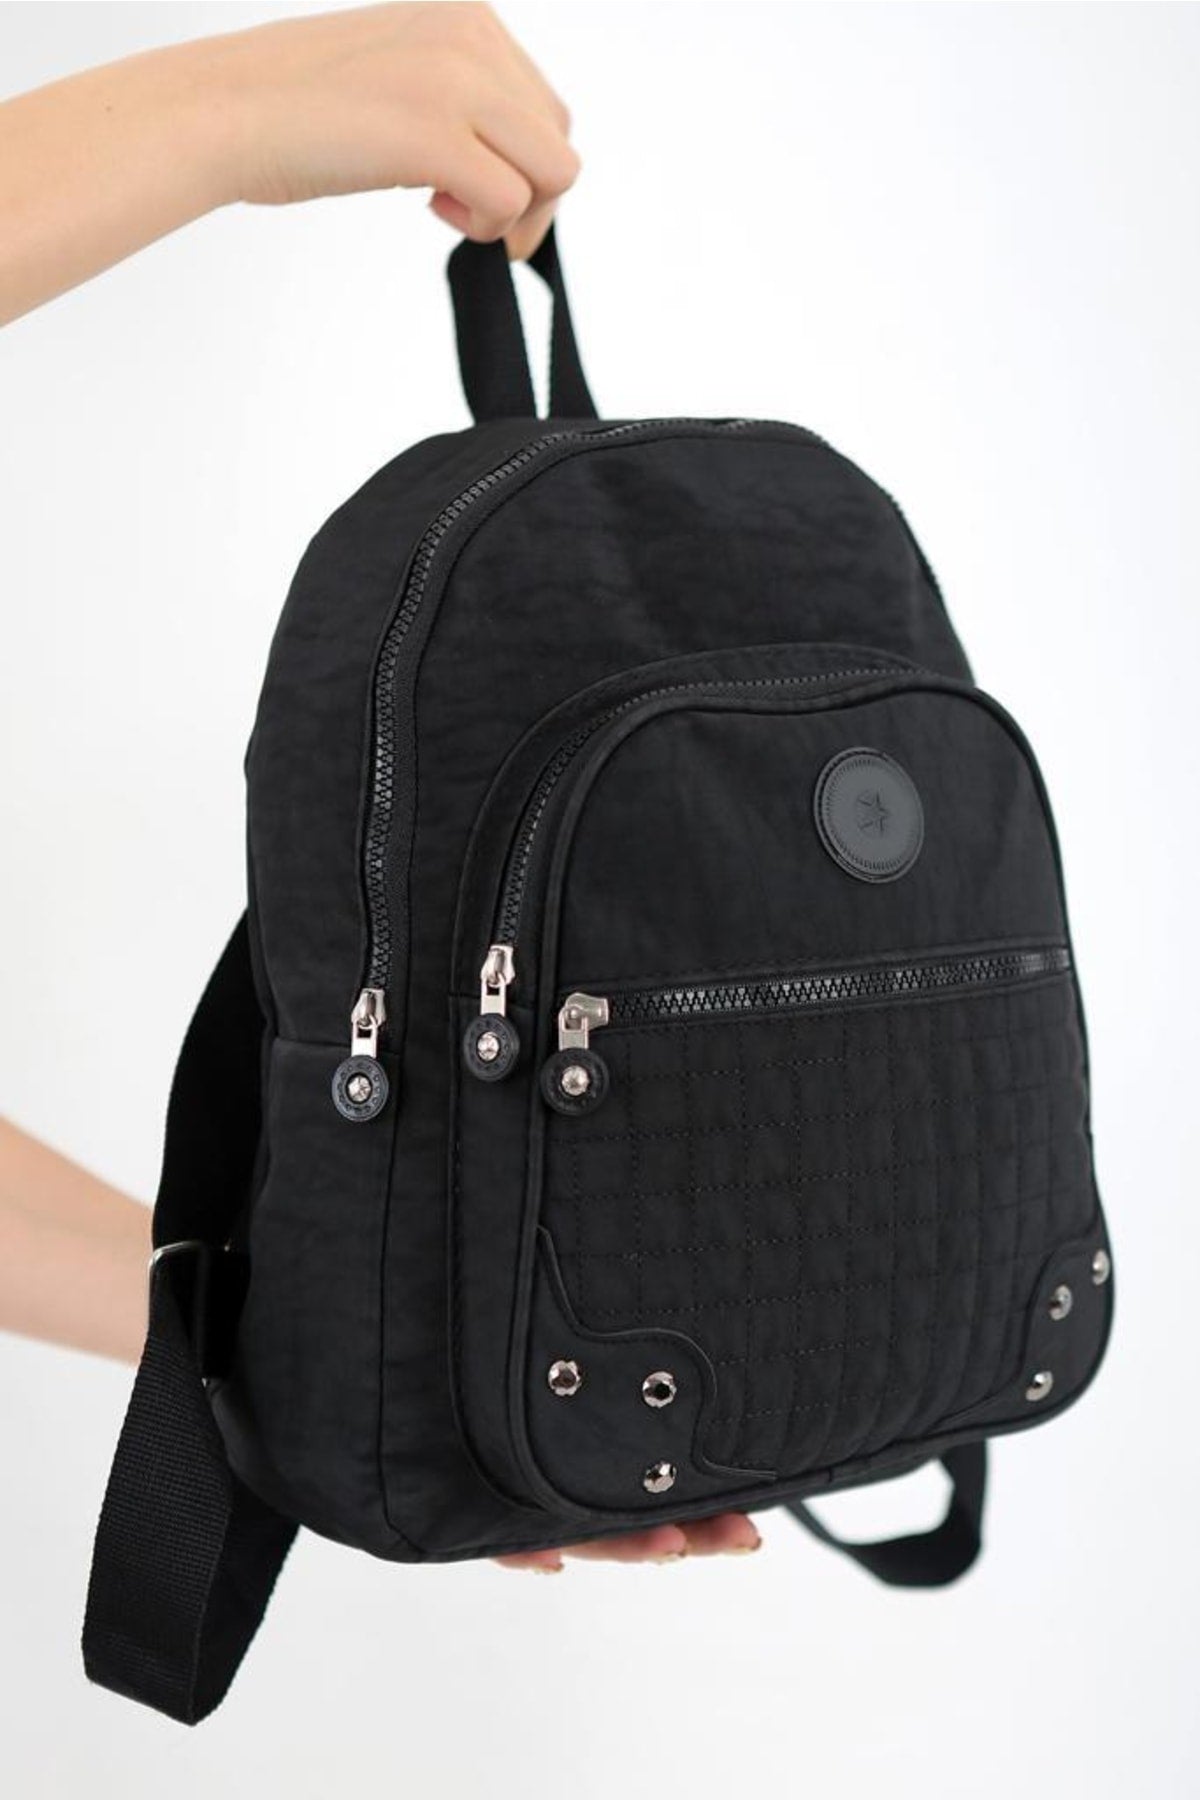 Unisex Black Crinkle Fabric Waterproof & Dirt-Resistant Backpack And School Bag